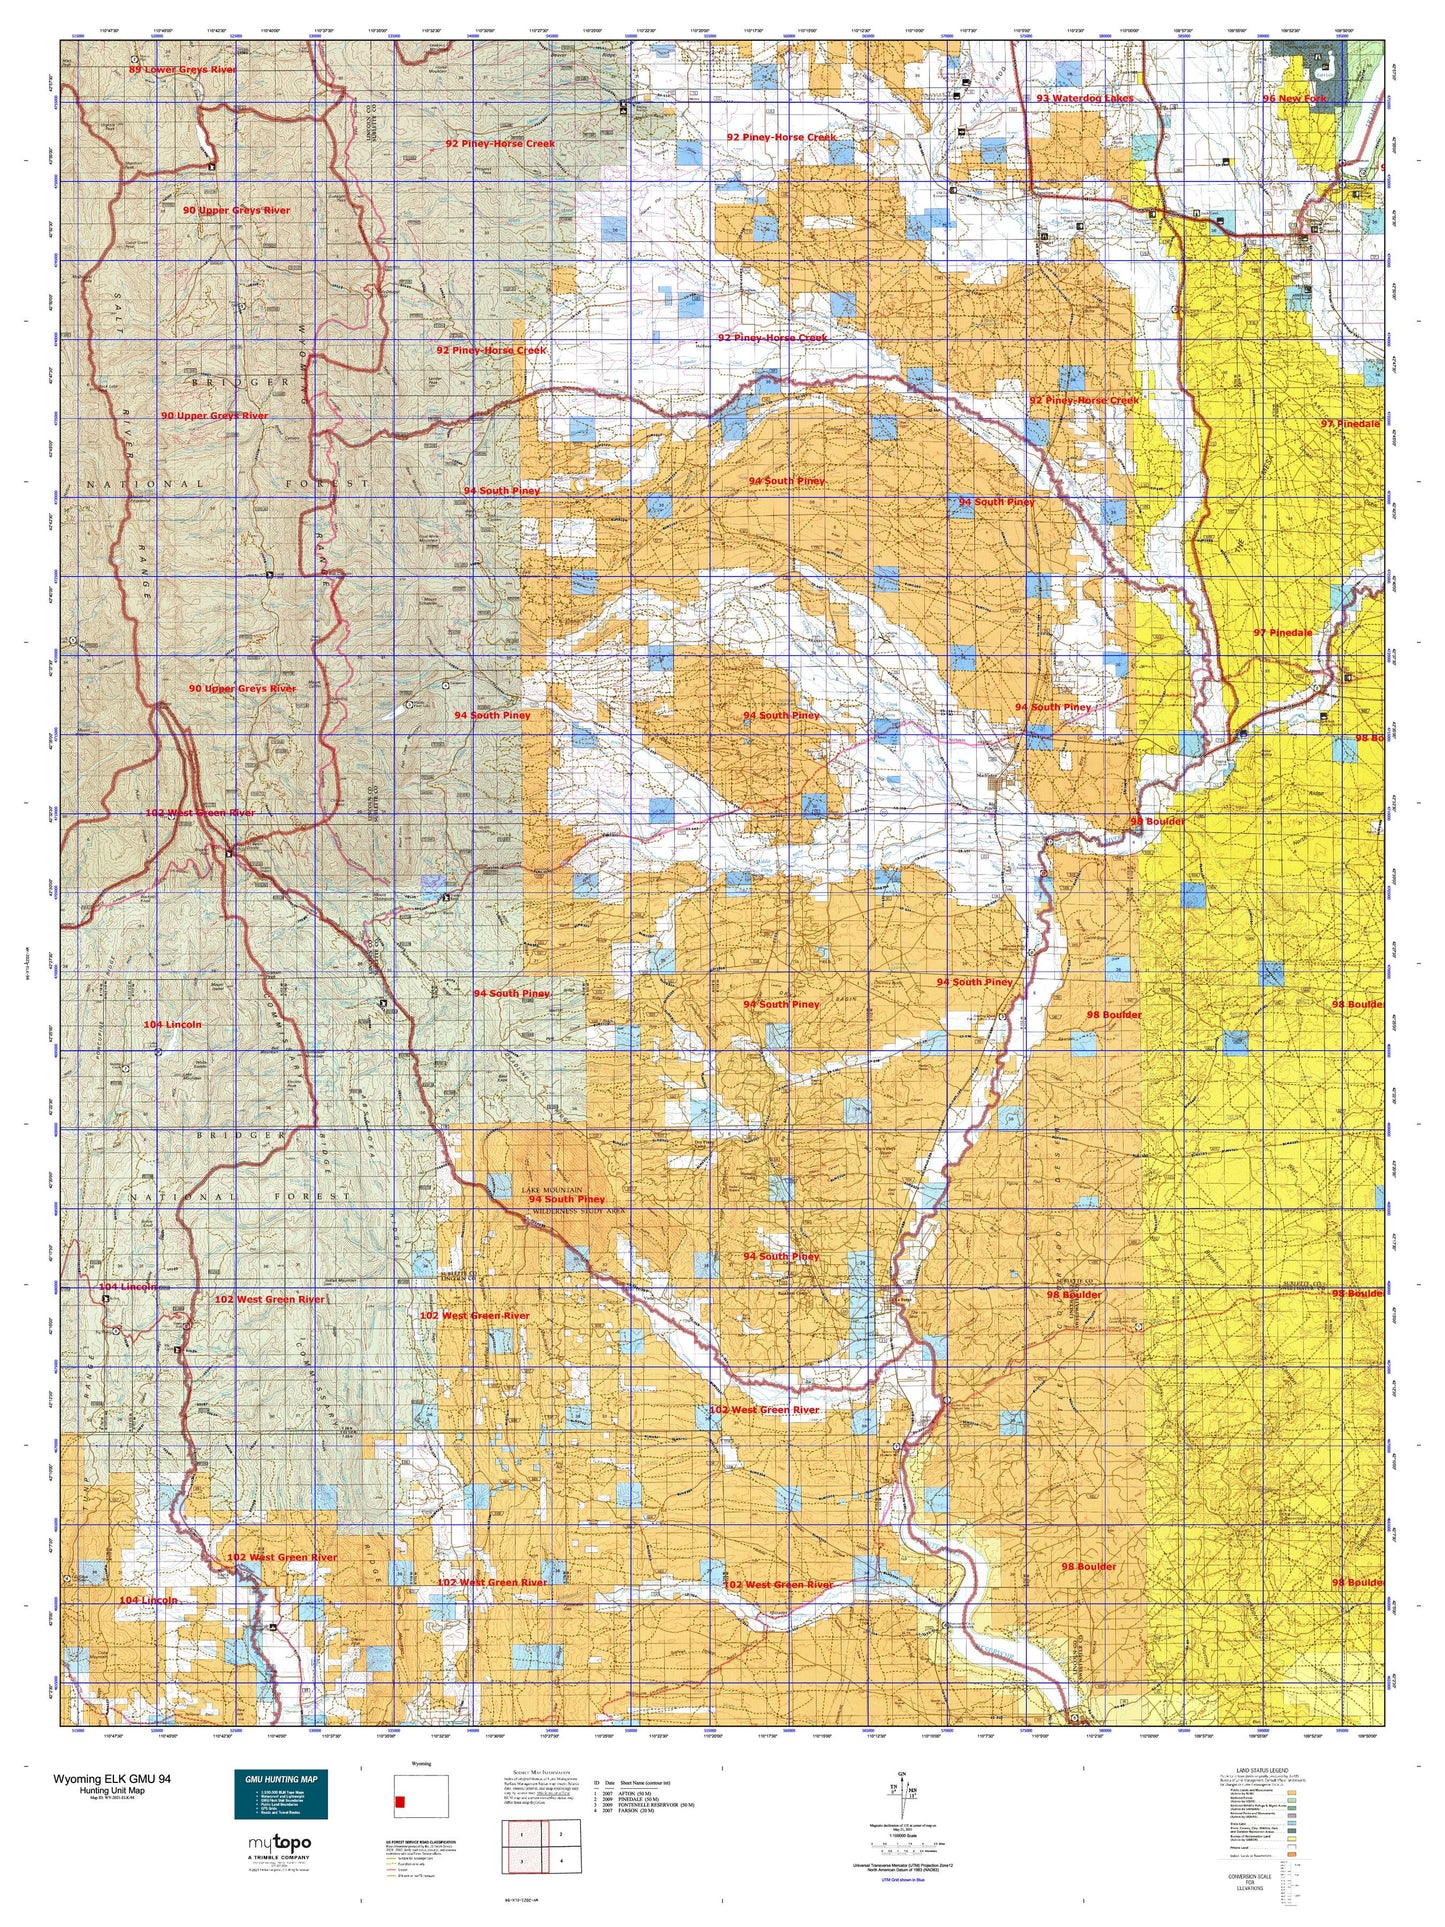 Wyoming Elk GMU 94 Map Image